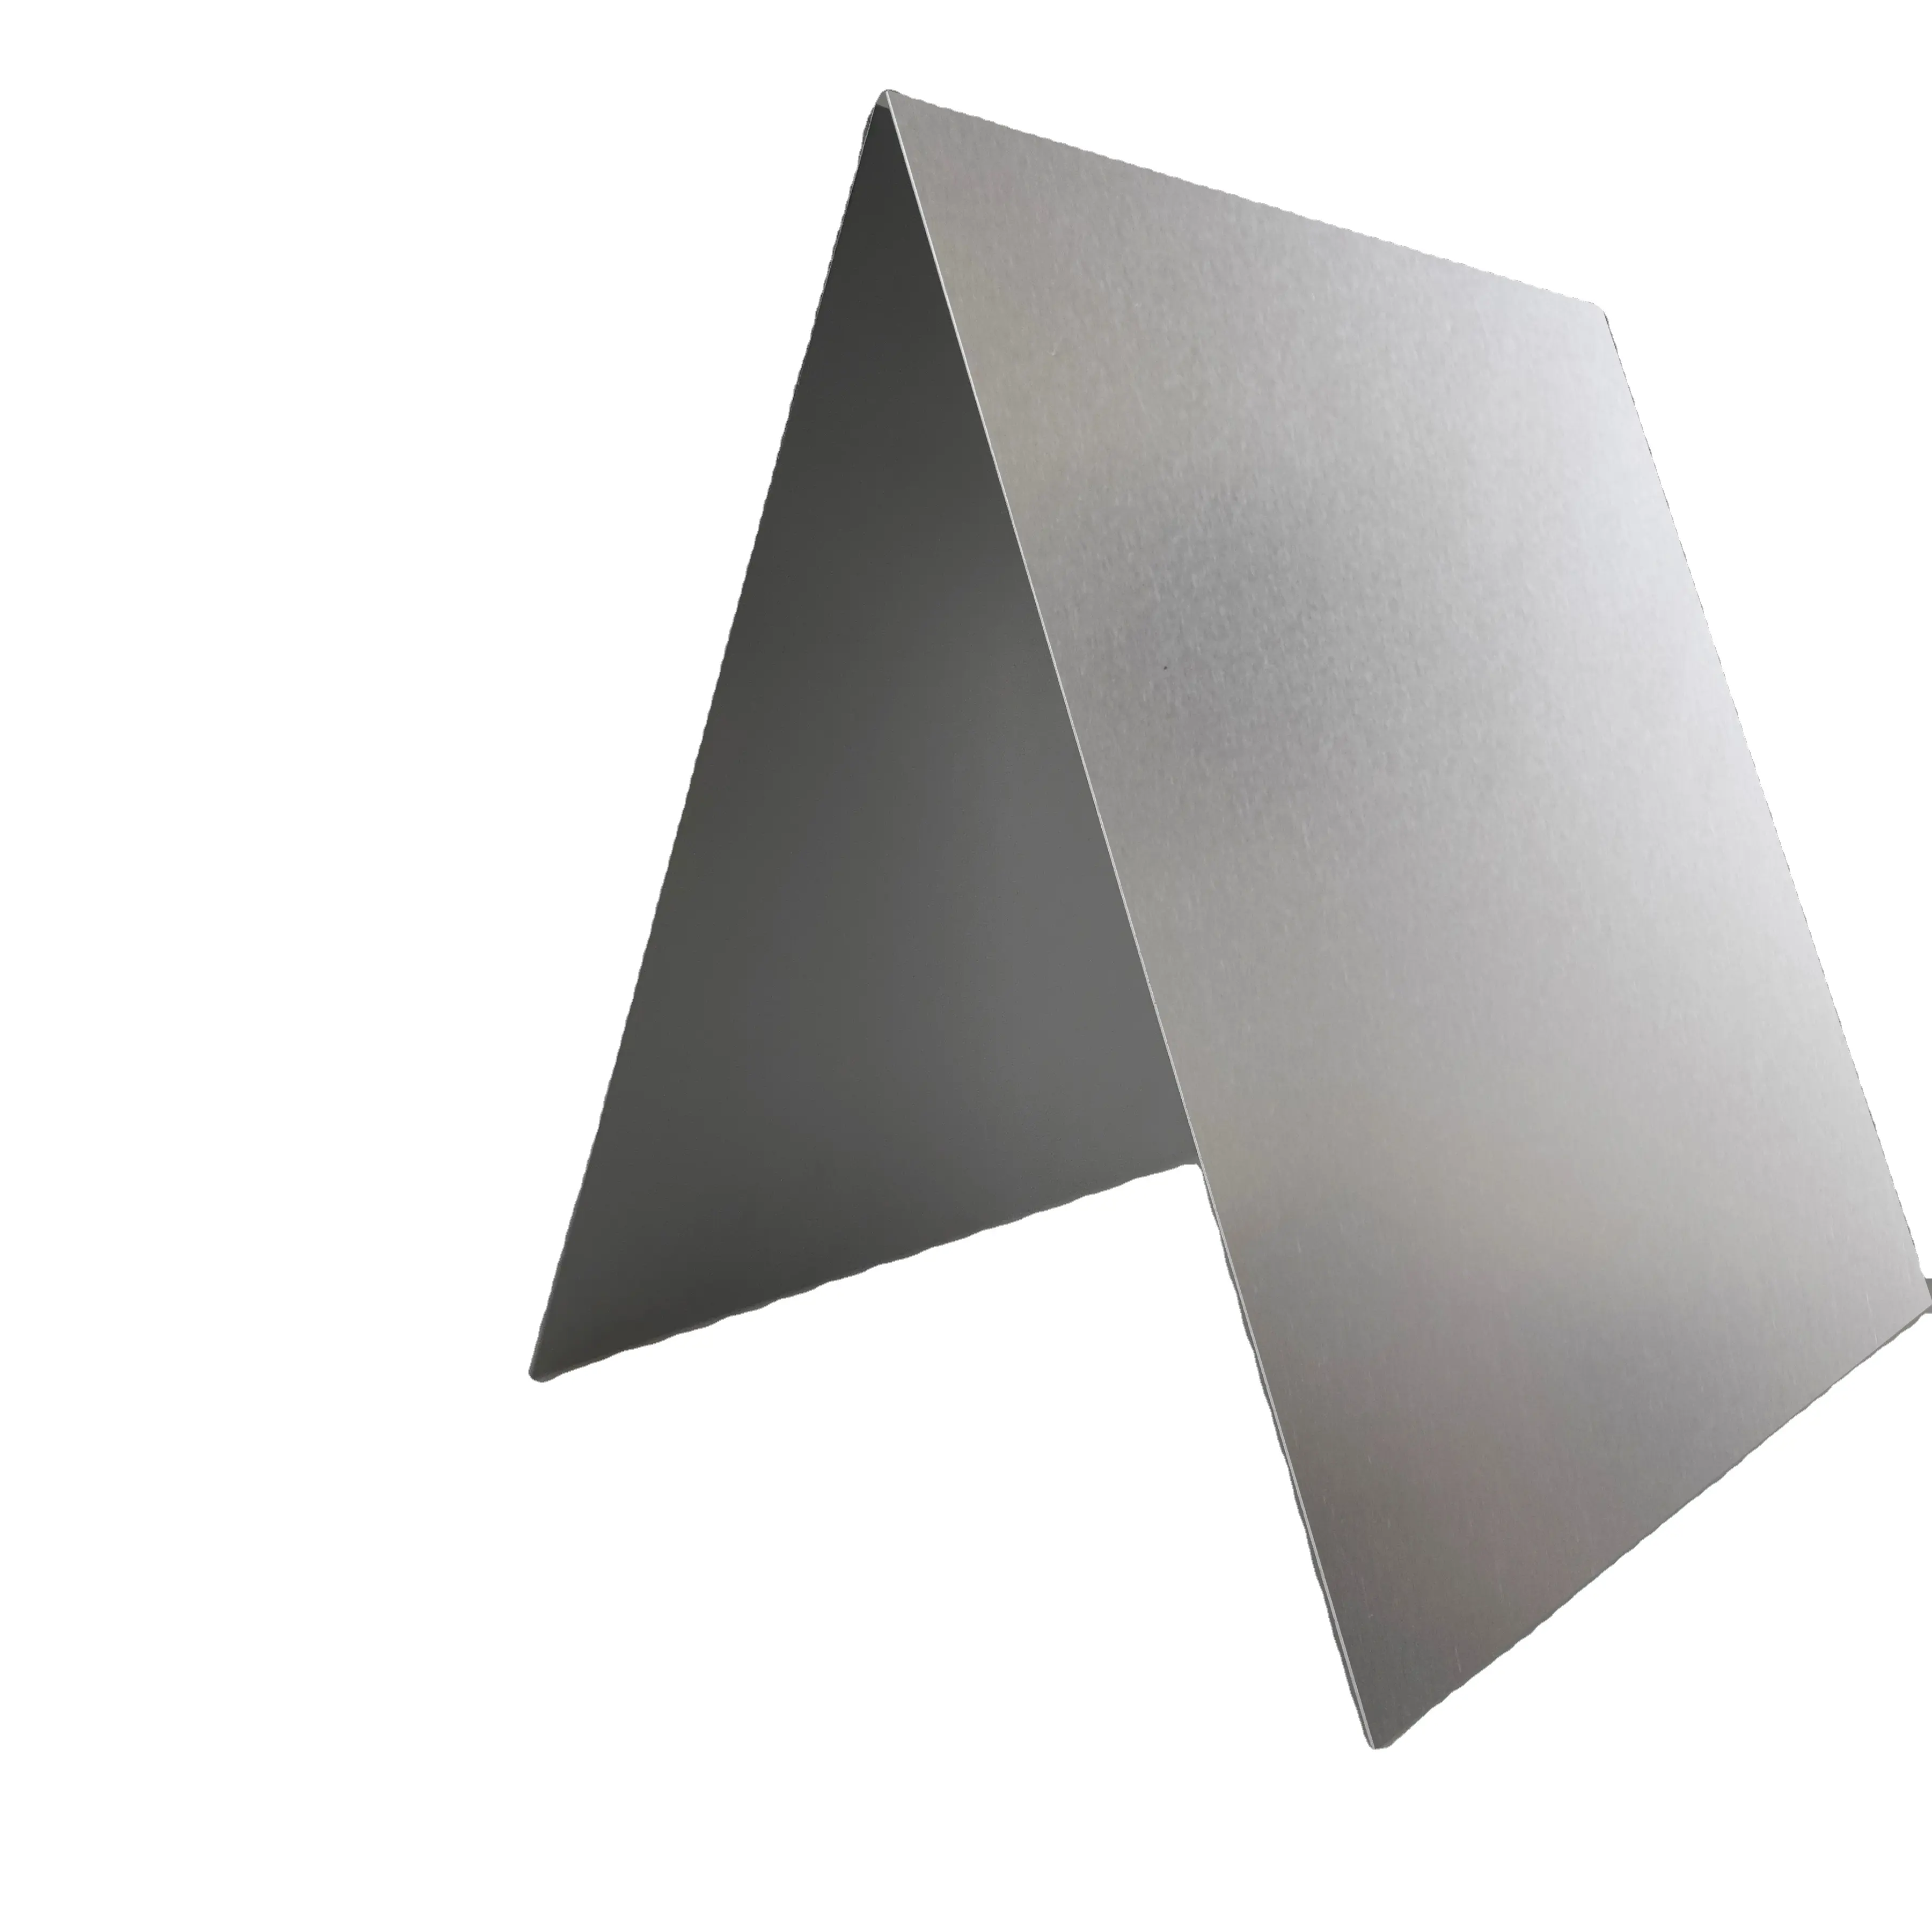 シルバー陽極酸化アルミニウムプレートカスタマイズ処理ステンレス鋼アルミニウム合金パネル0.51mmゼロカッティング